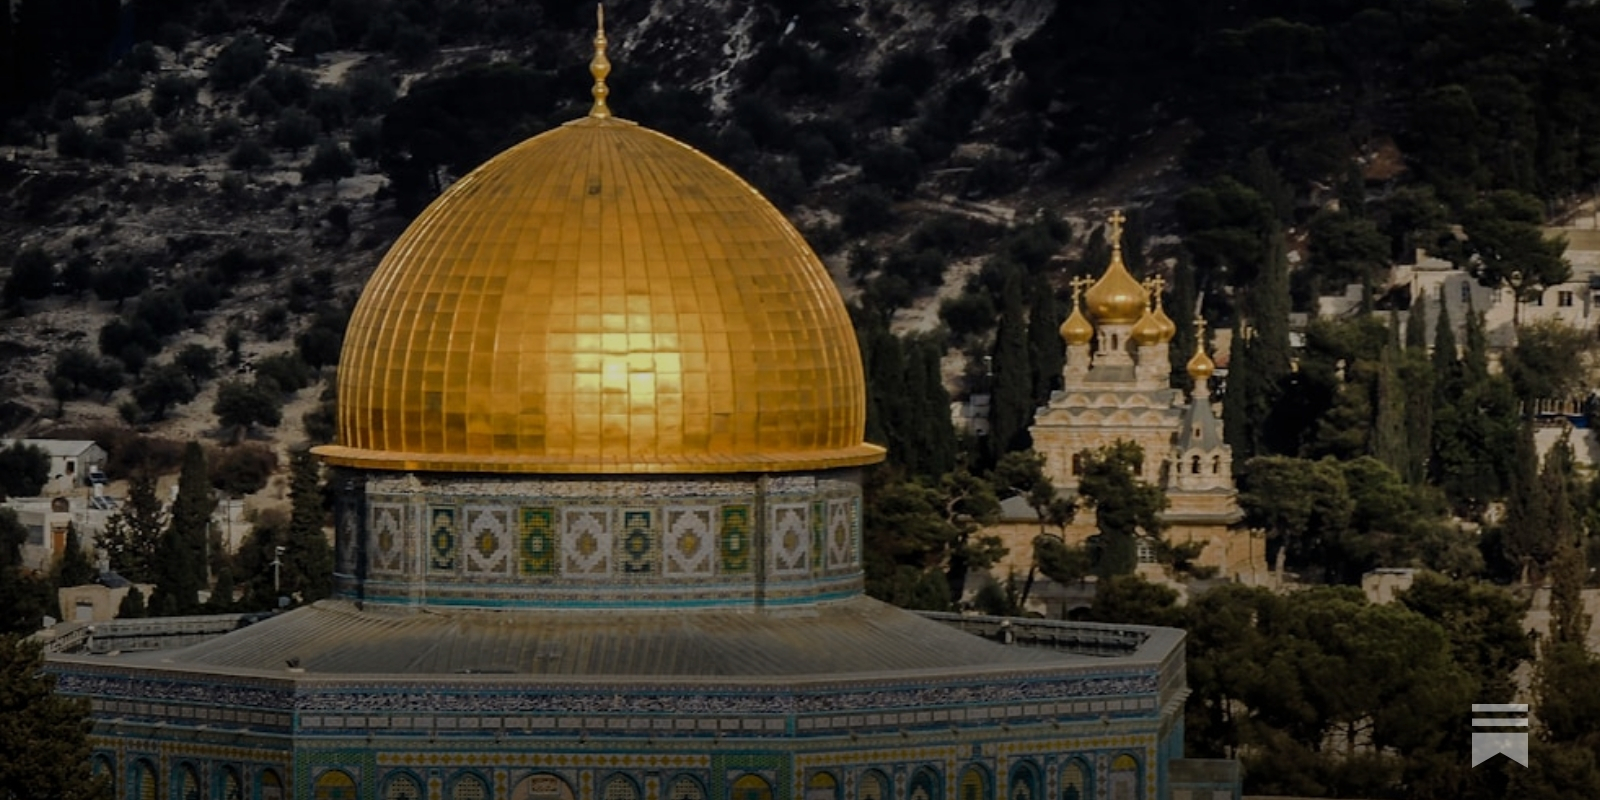 A Verdadeira Ameaça à Mesquita de Al-Aqsa vem dos muçulmanos, não